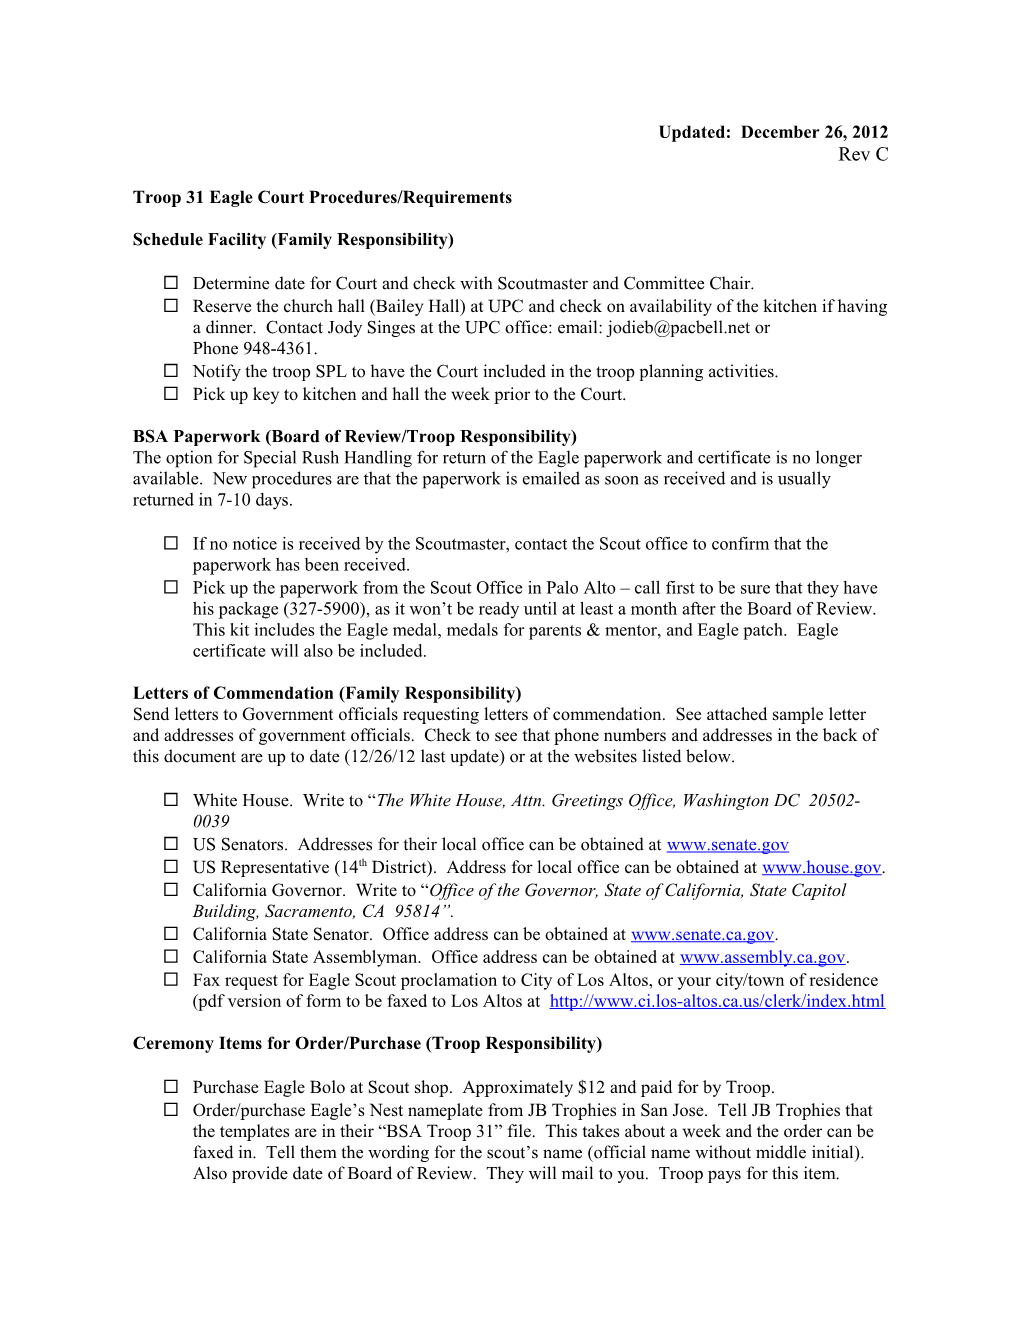 Troop 31 Eagle Court Procedures/Requirements